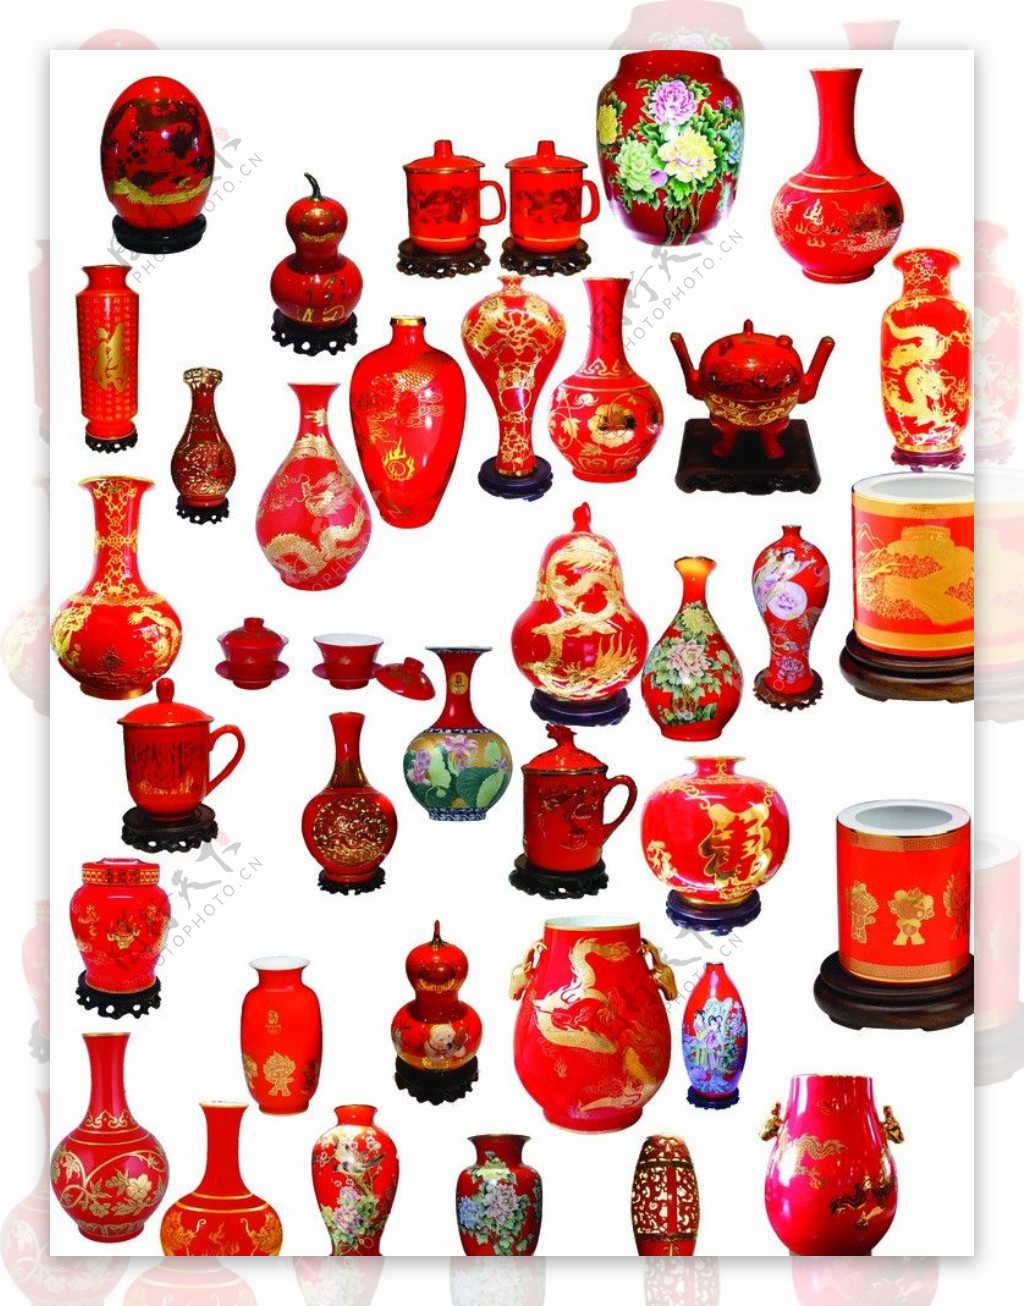 中国红瓷器